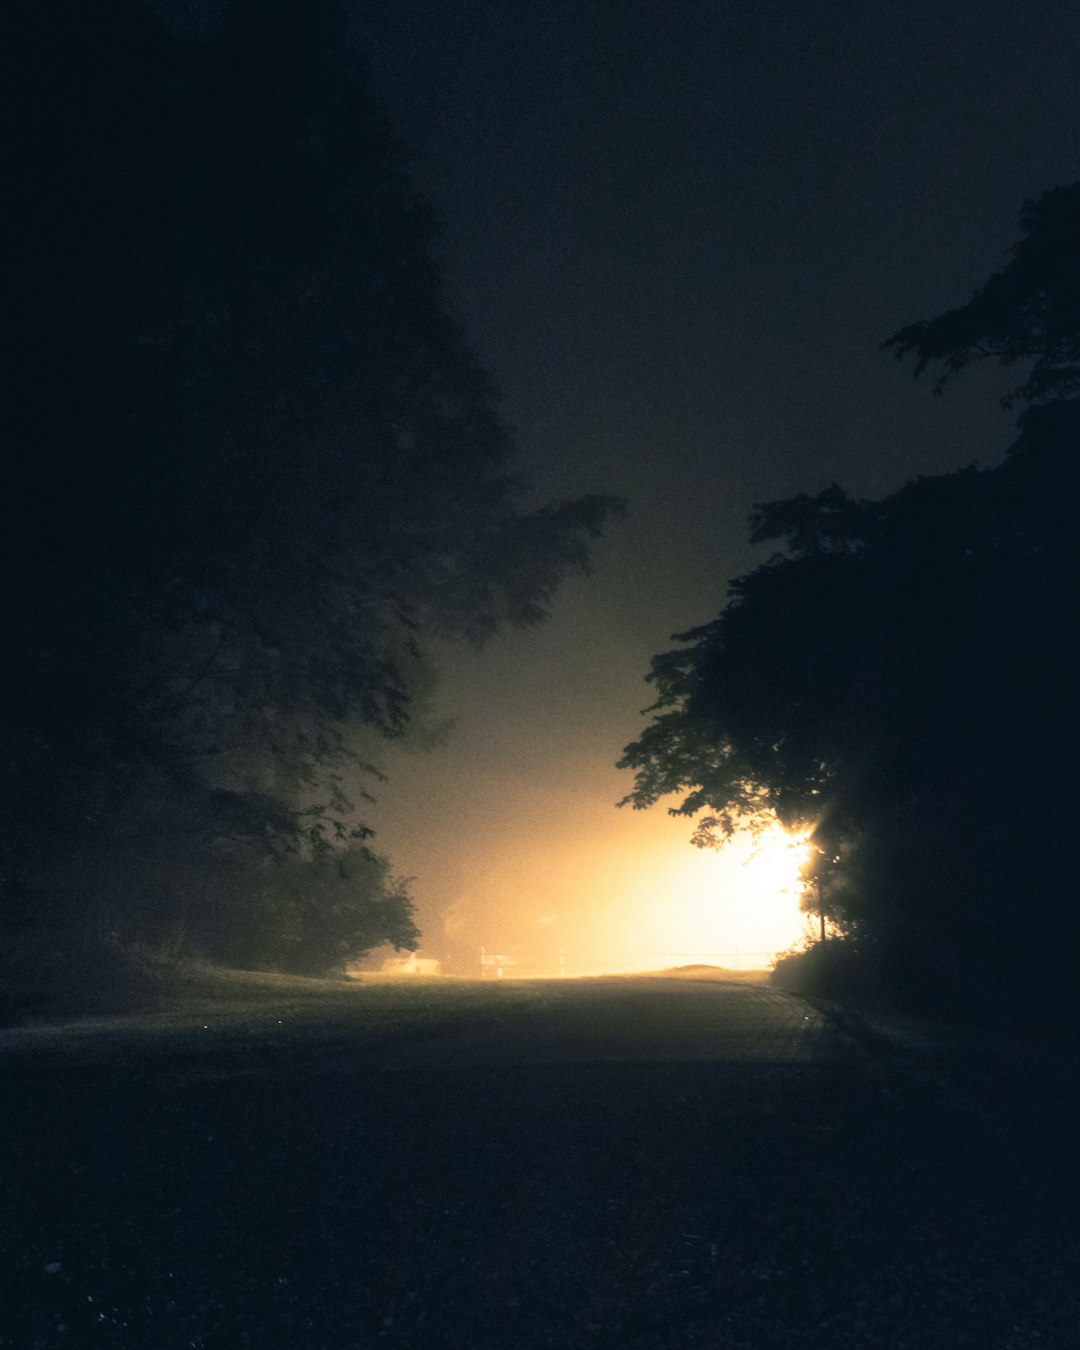 light between trees